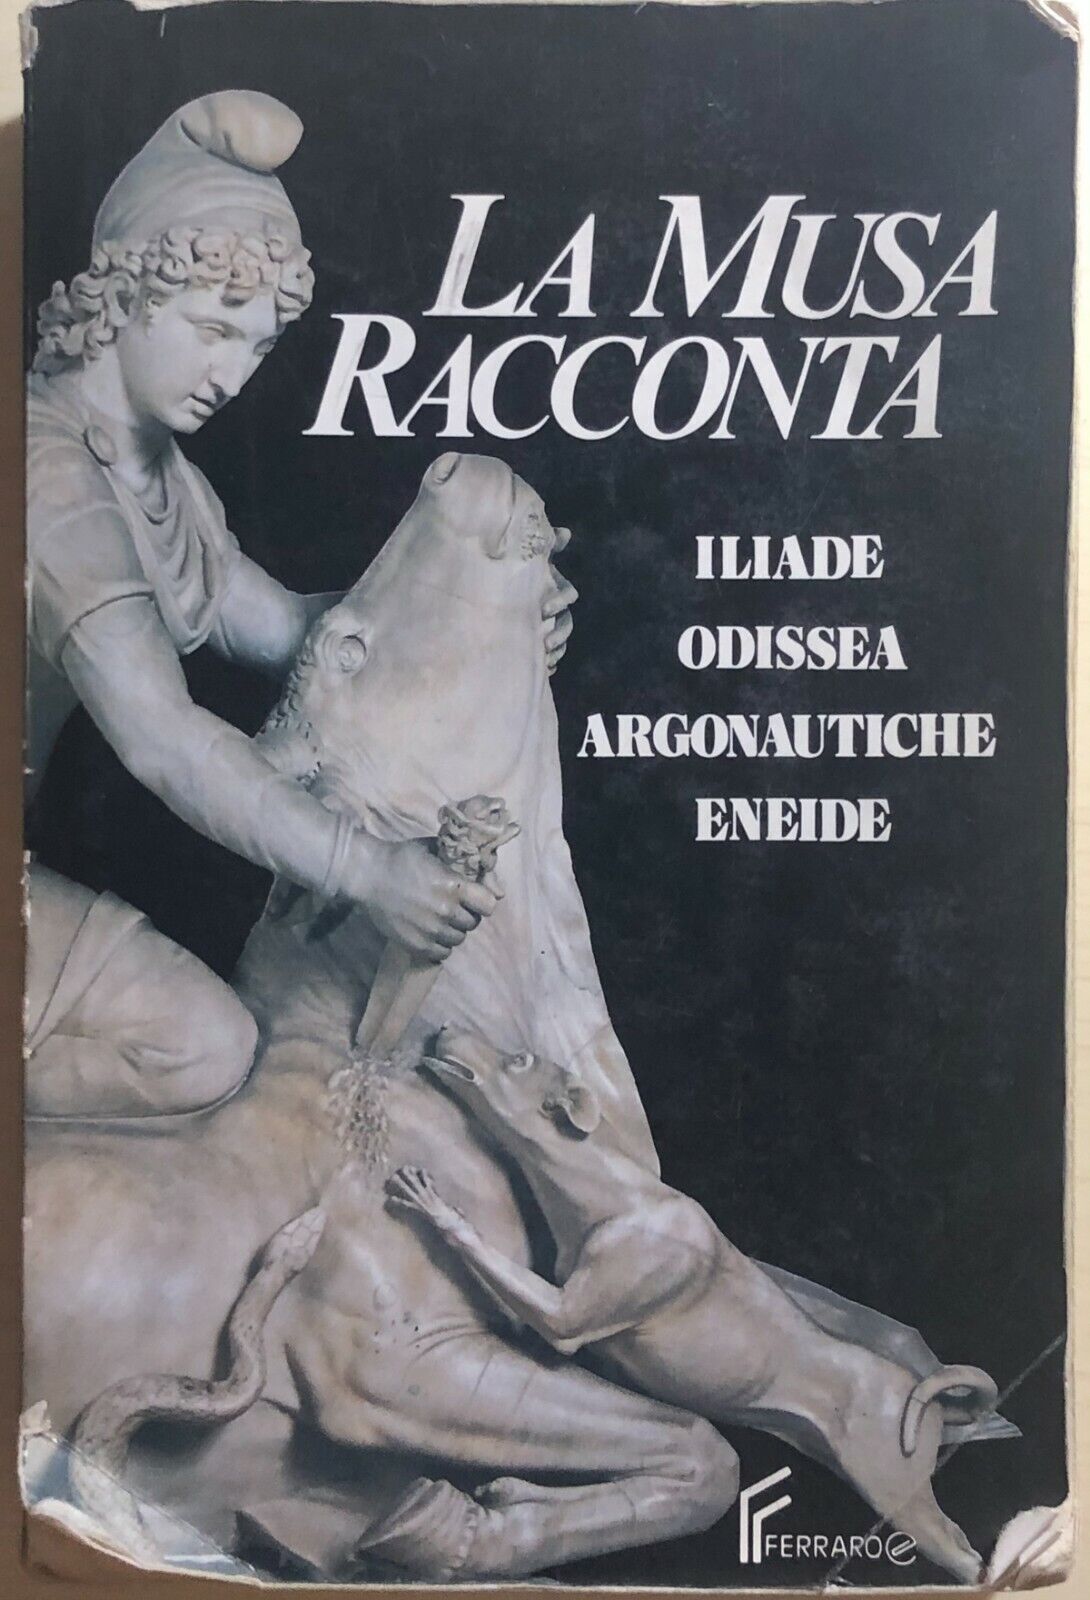 La Musa racconta Ilade-Odissea-Argonautiche-Eneide di Aa.vv., 1991, Editrice Fer